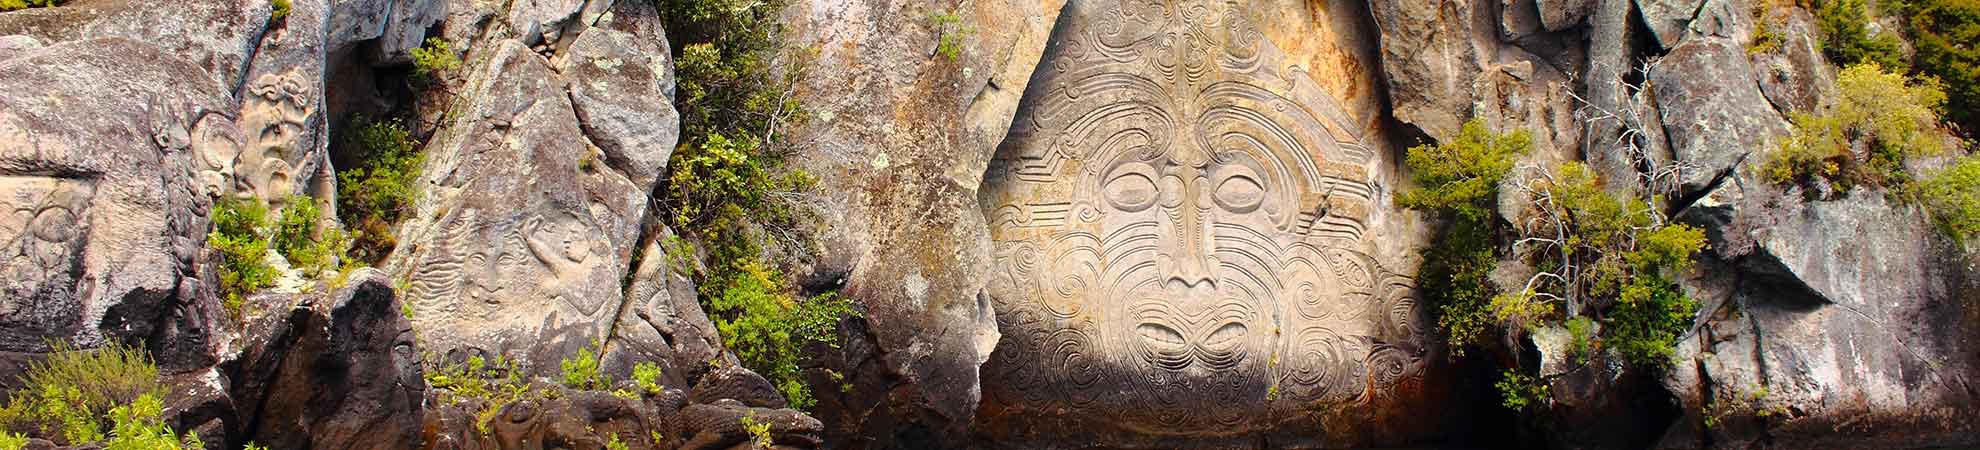 Découvrir la culture et l'histoire maorie pendant votre séjour en Nouvelle-Zélande